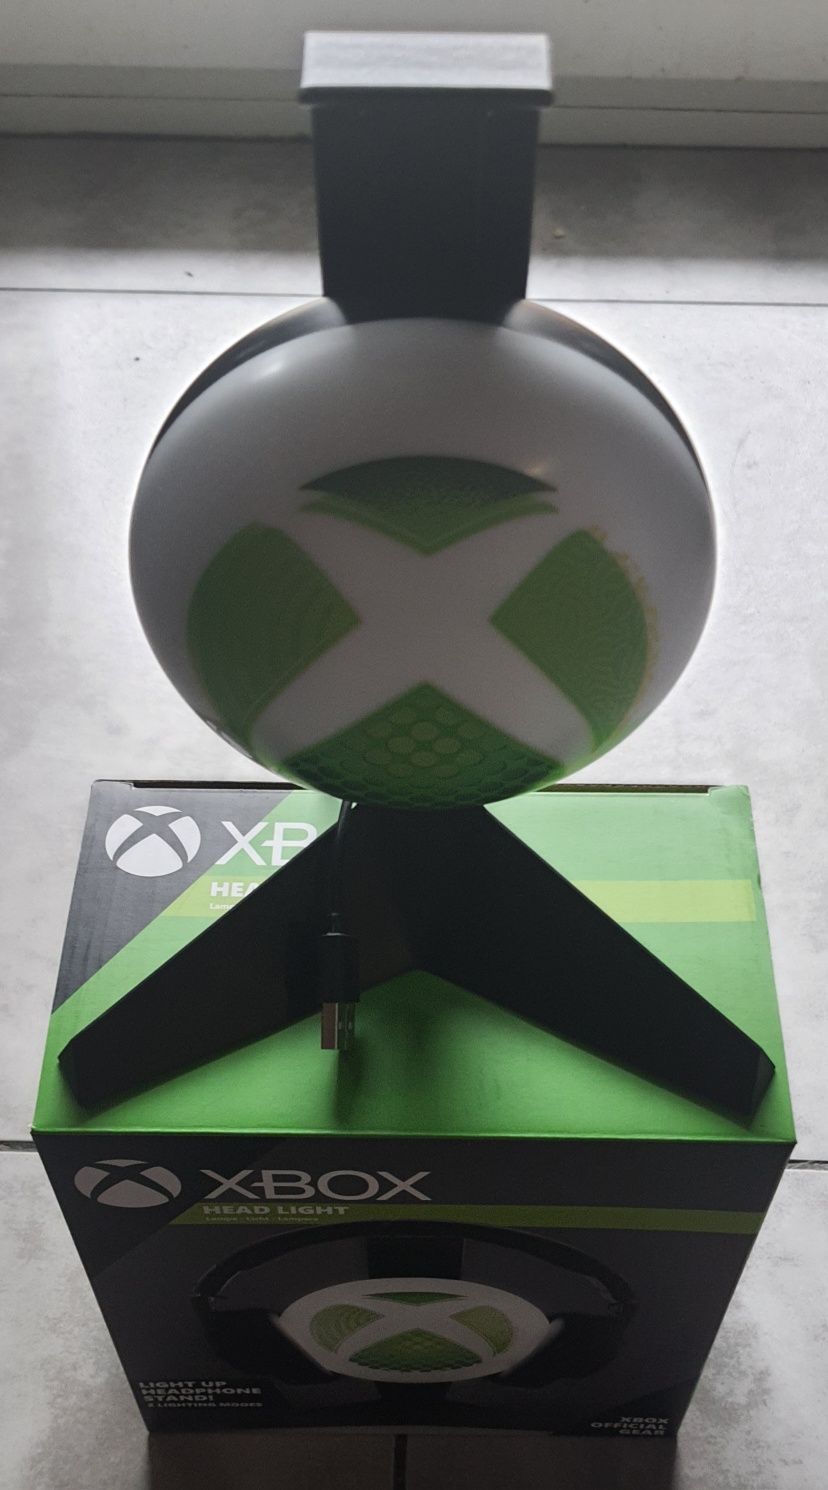 Paladone Lampka Xbox Stojak na Słuchawki